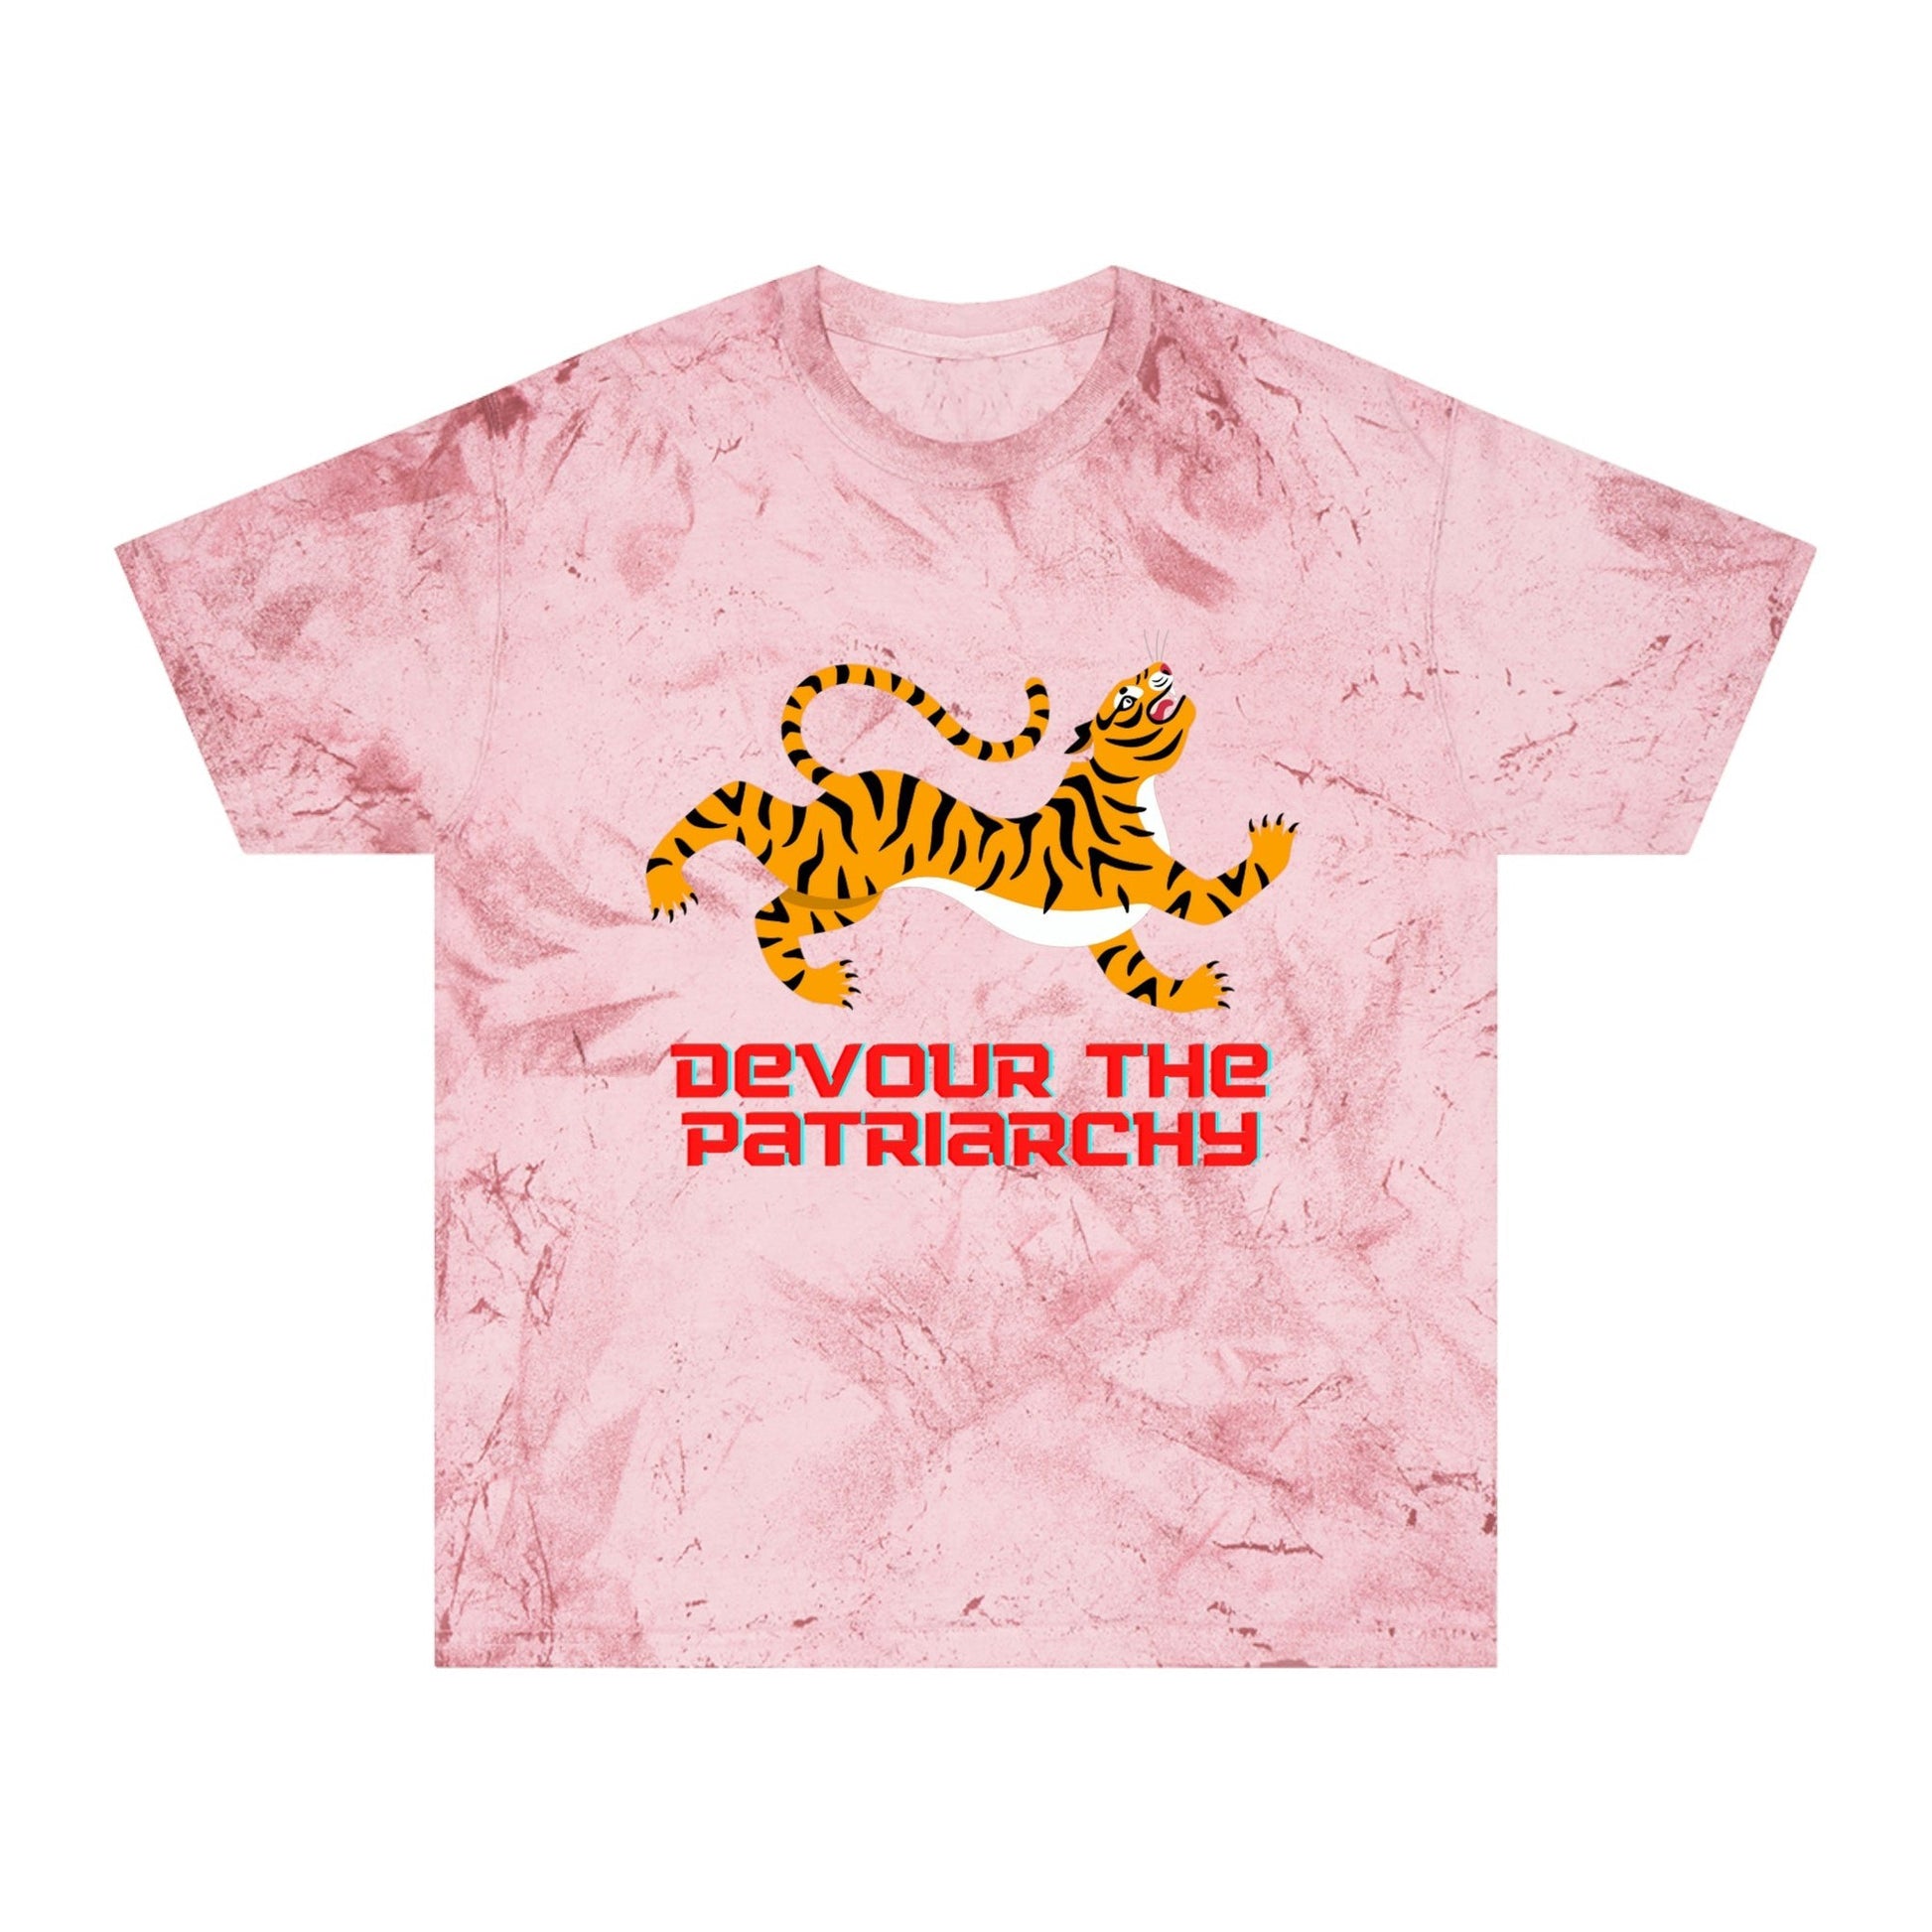 Devour the Patriarchy Feminist Tiger Unisex Color Blast T-Shirt